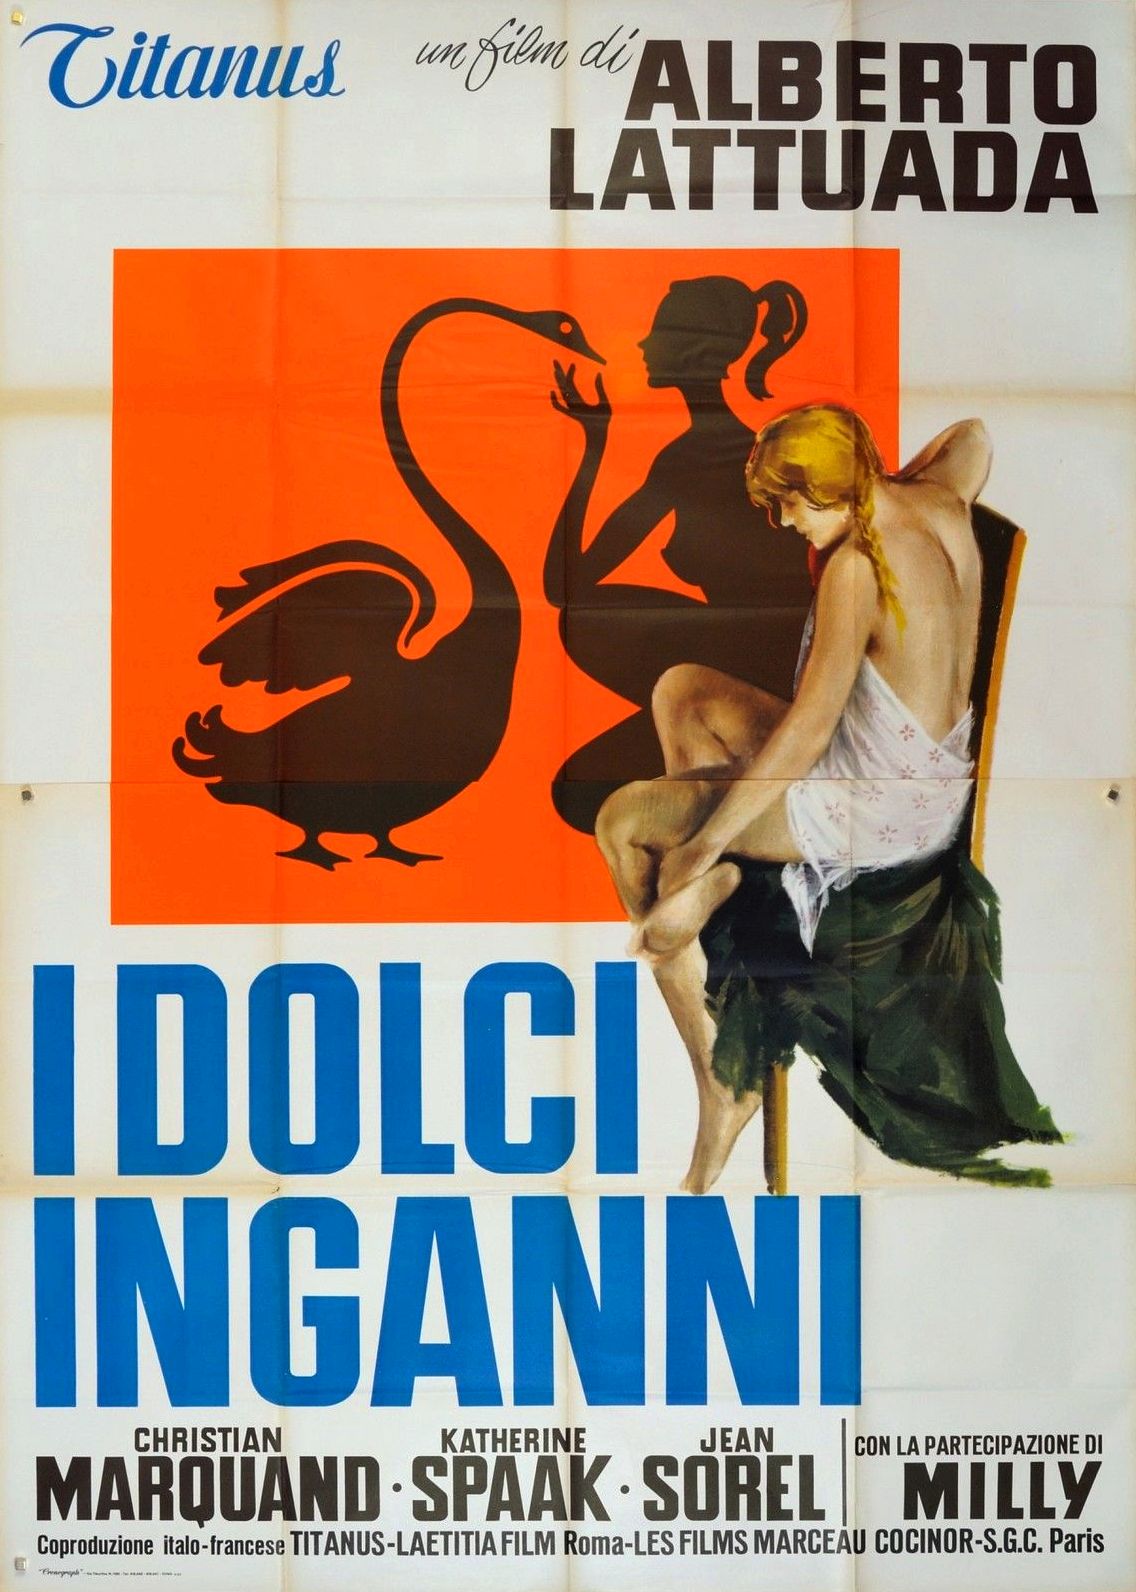 Γλυκιεσ Αυταπατεσ / Dolci inganni / Sweet Deceptions (1960)